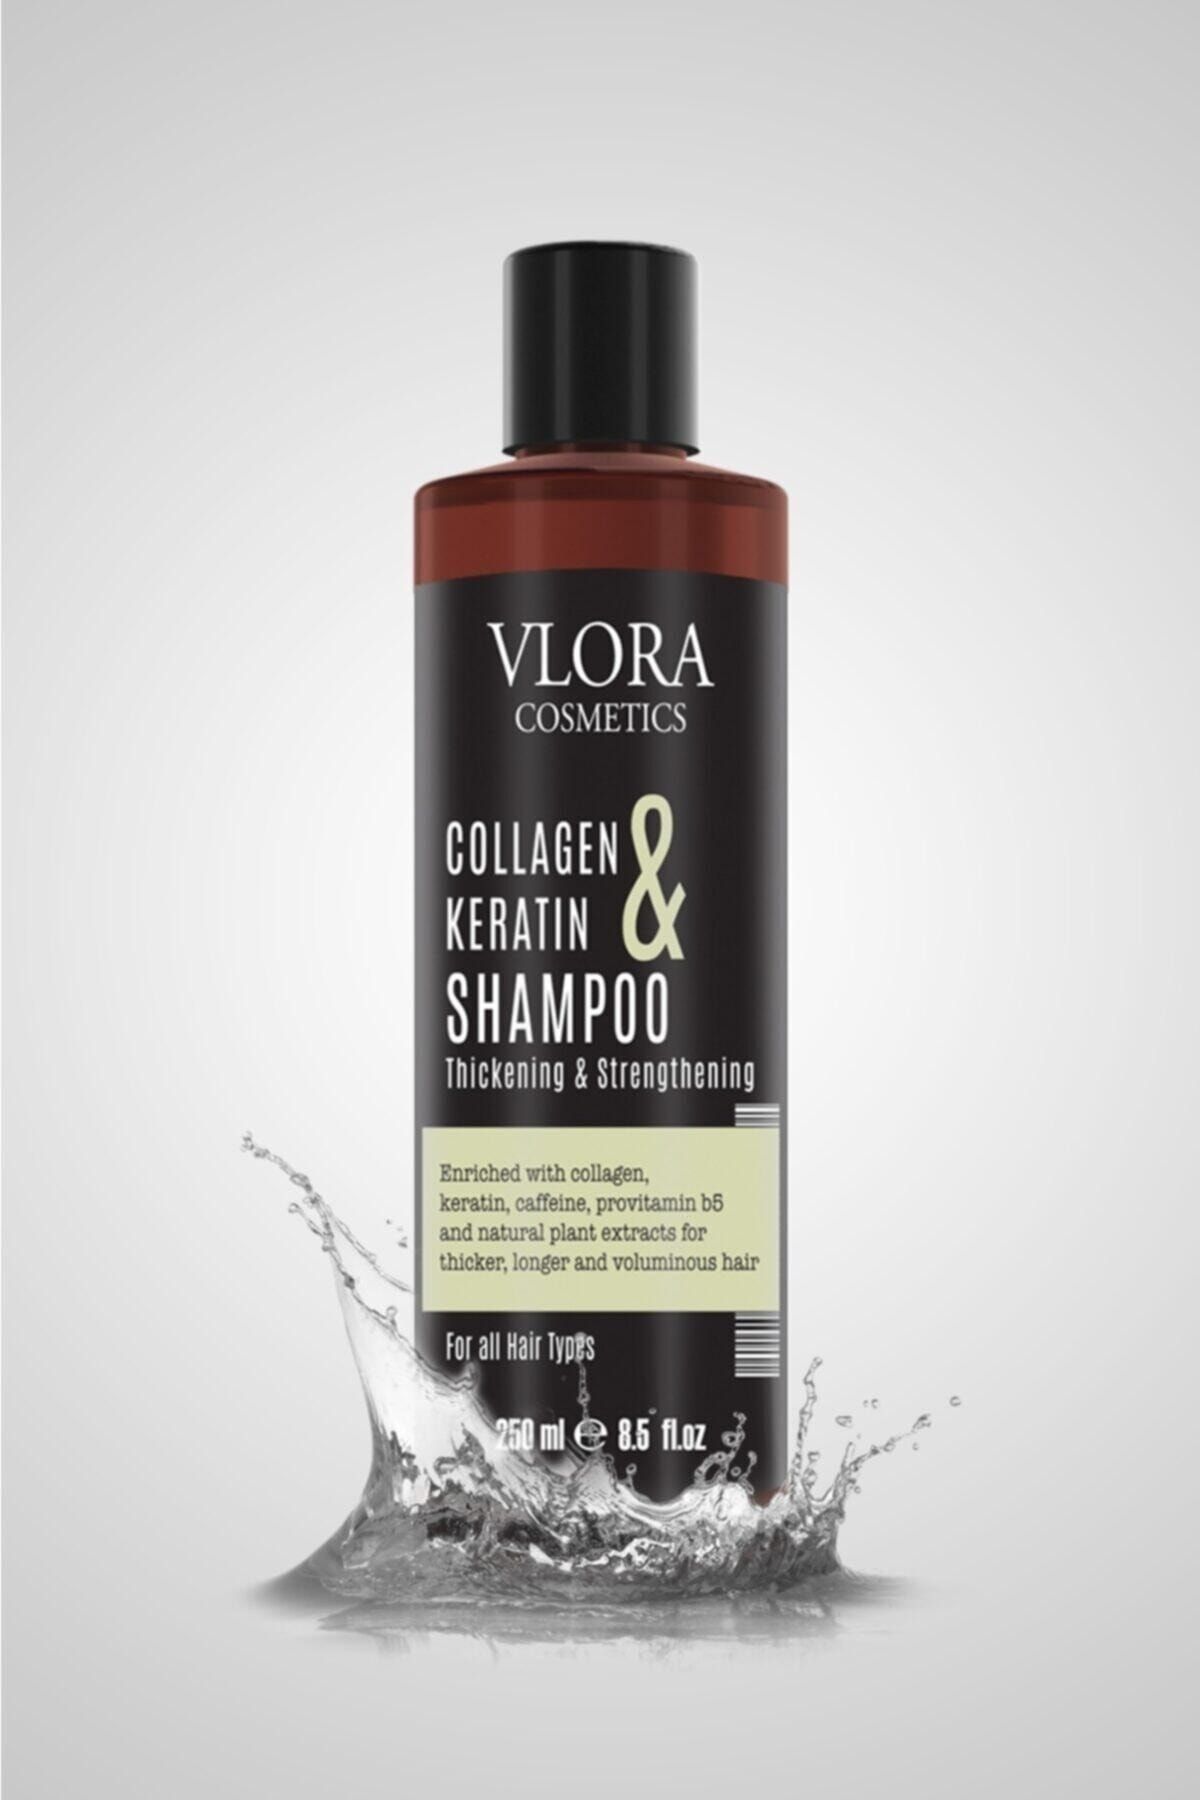 VLORA Kolajen&keratin Dolgunlaştırıcı Ve Güçlendirici Saç Bakım Şampuanı 250ml